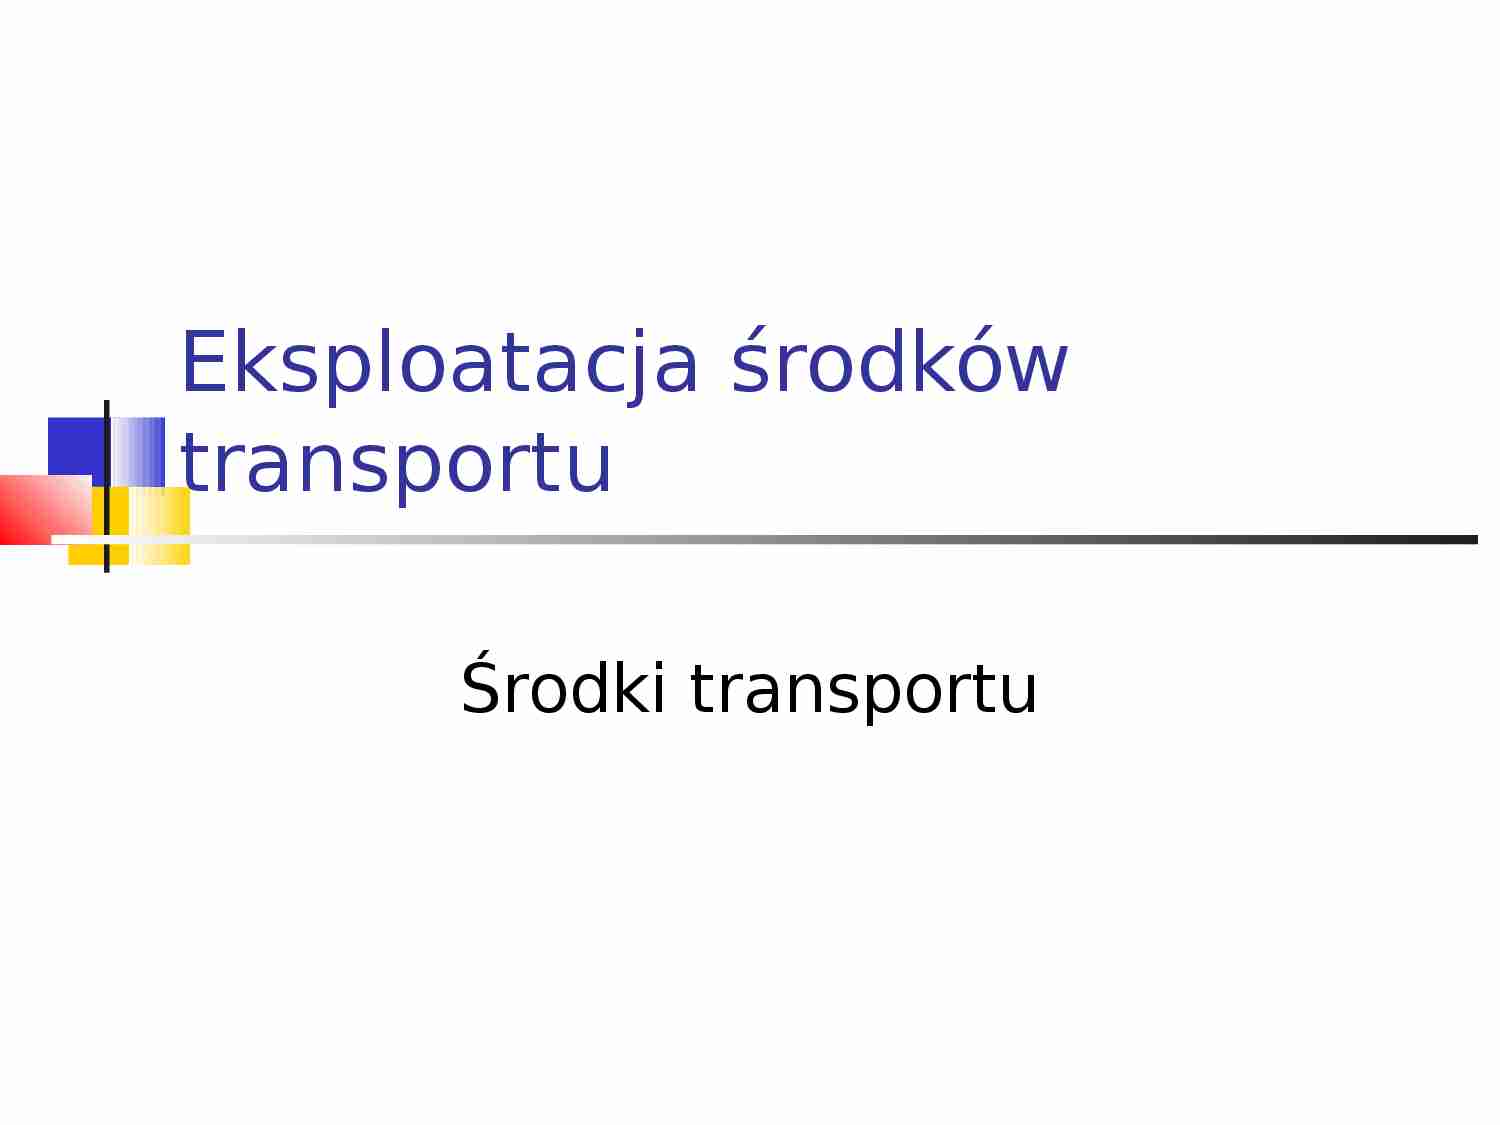 Eksploatacja środków transportu - strona 1